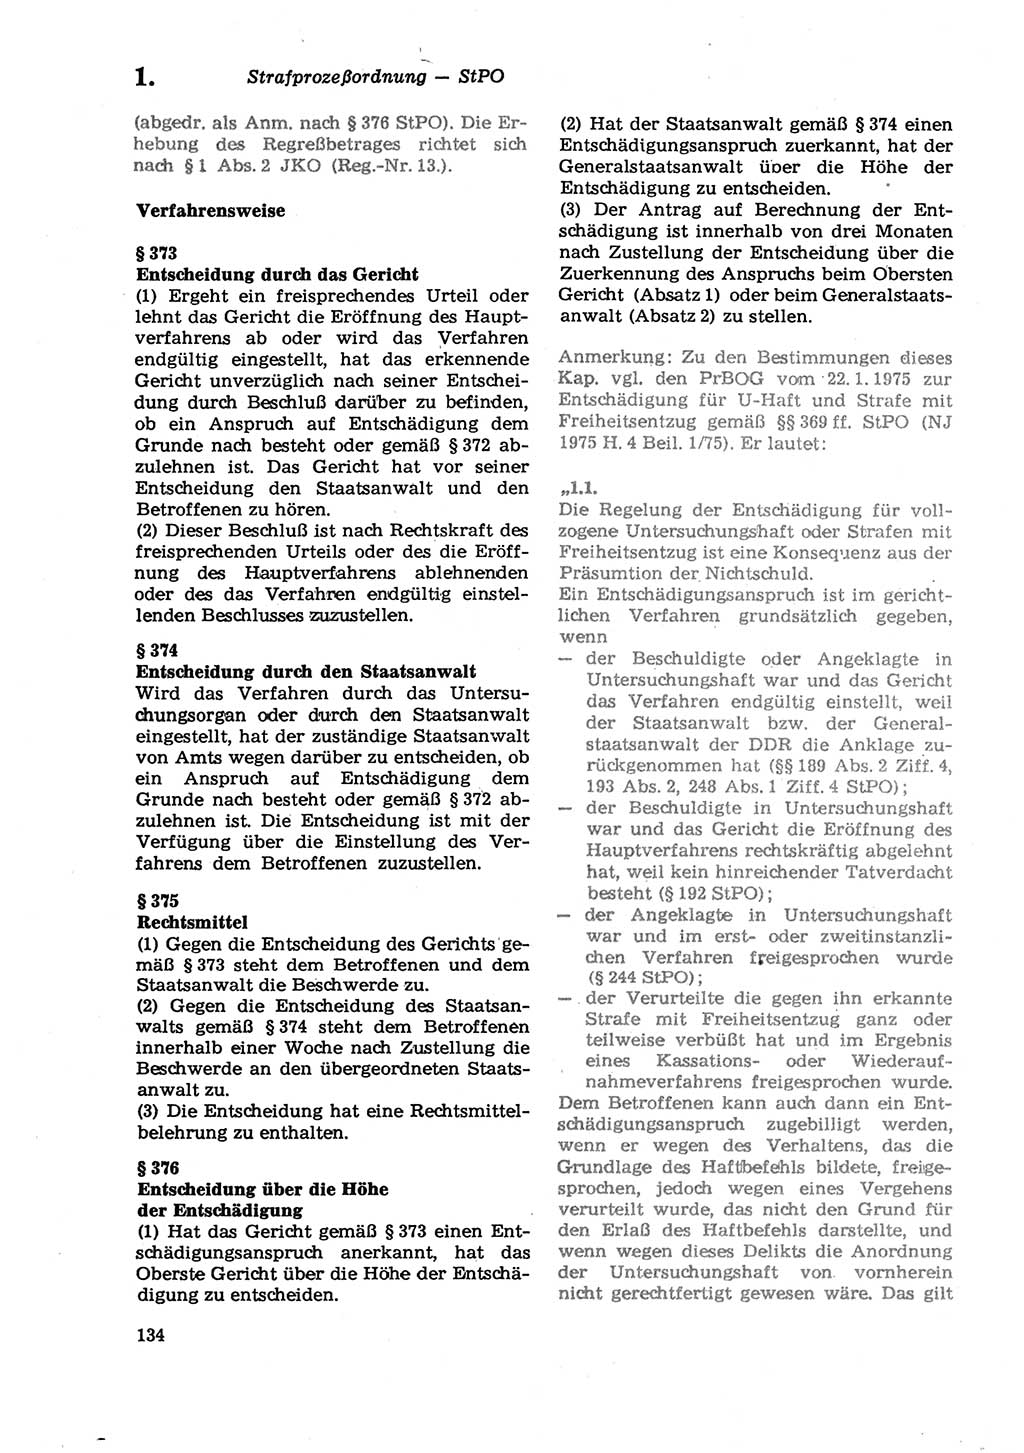 Strafprozeßordnung (StPO) der Deutschen Demokratischen Republik (DDR) sowie angrenzende Gesetze und Bestimmungen 1979, Seite 134 (StPO DDR Ges. Best. 1979, S. 134)